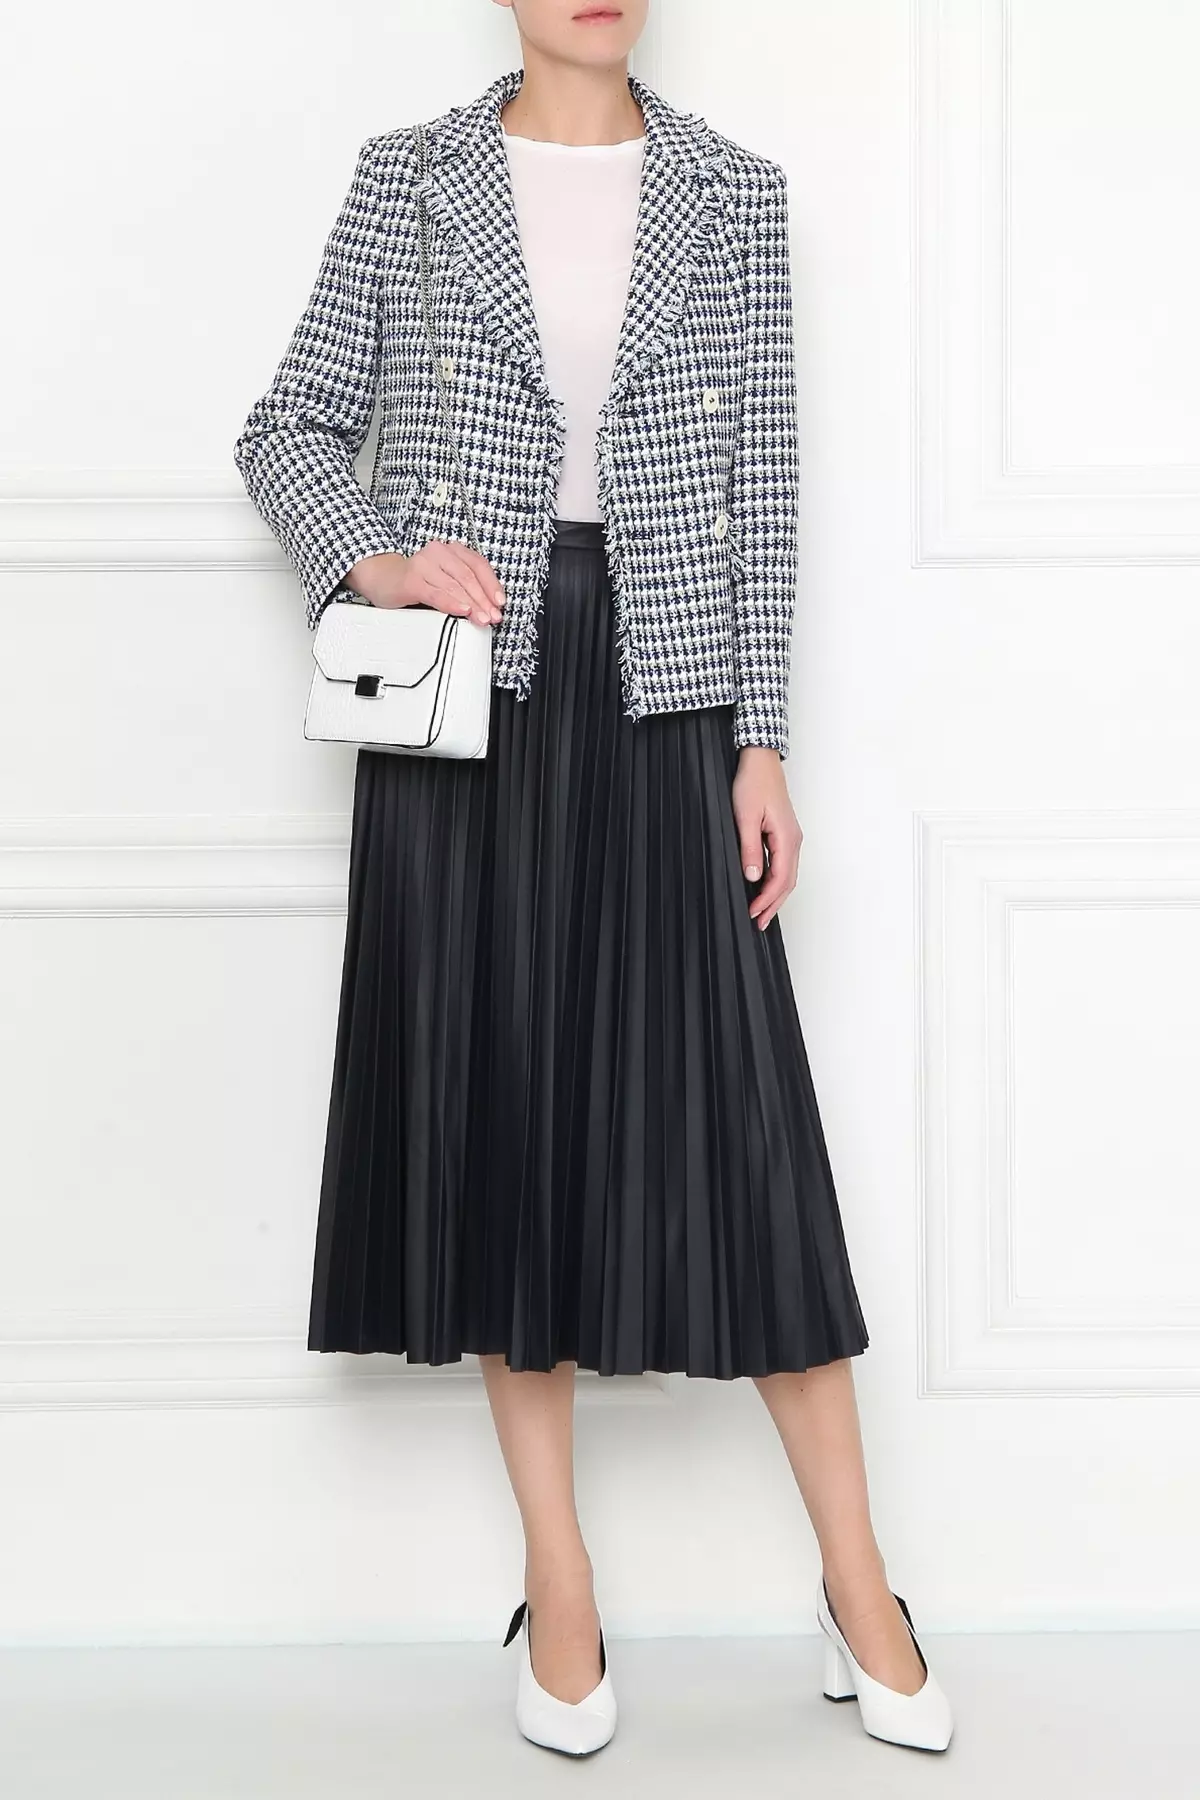 Jaqueta com uma saia pliste: imagens com uma jaqueta e um cinto (cinto), imagens interessantes com um terno de cor quadriculado, branco e outro 796_15